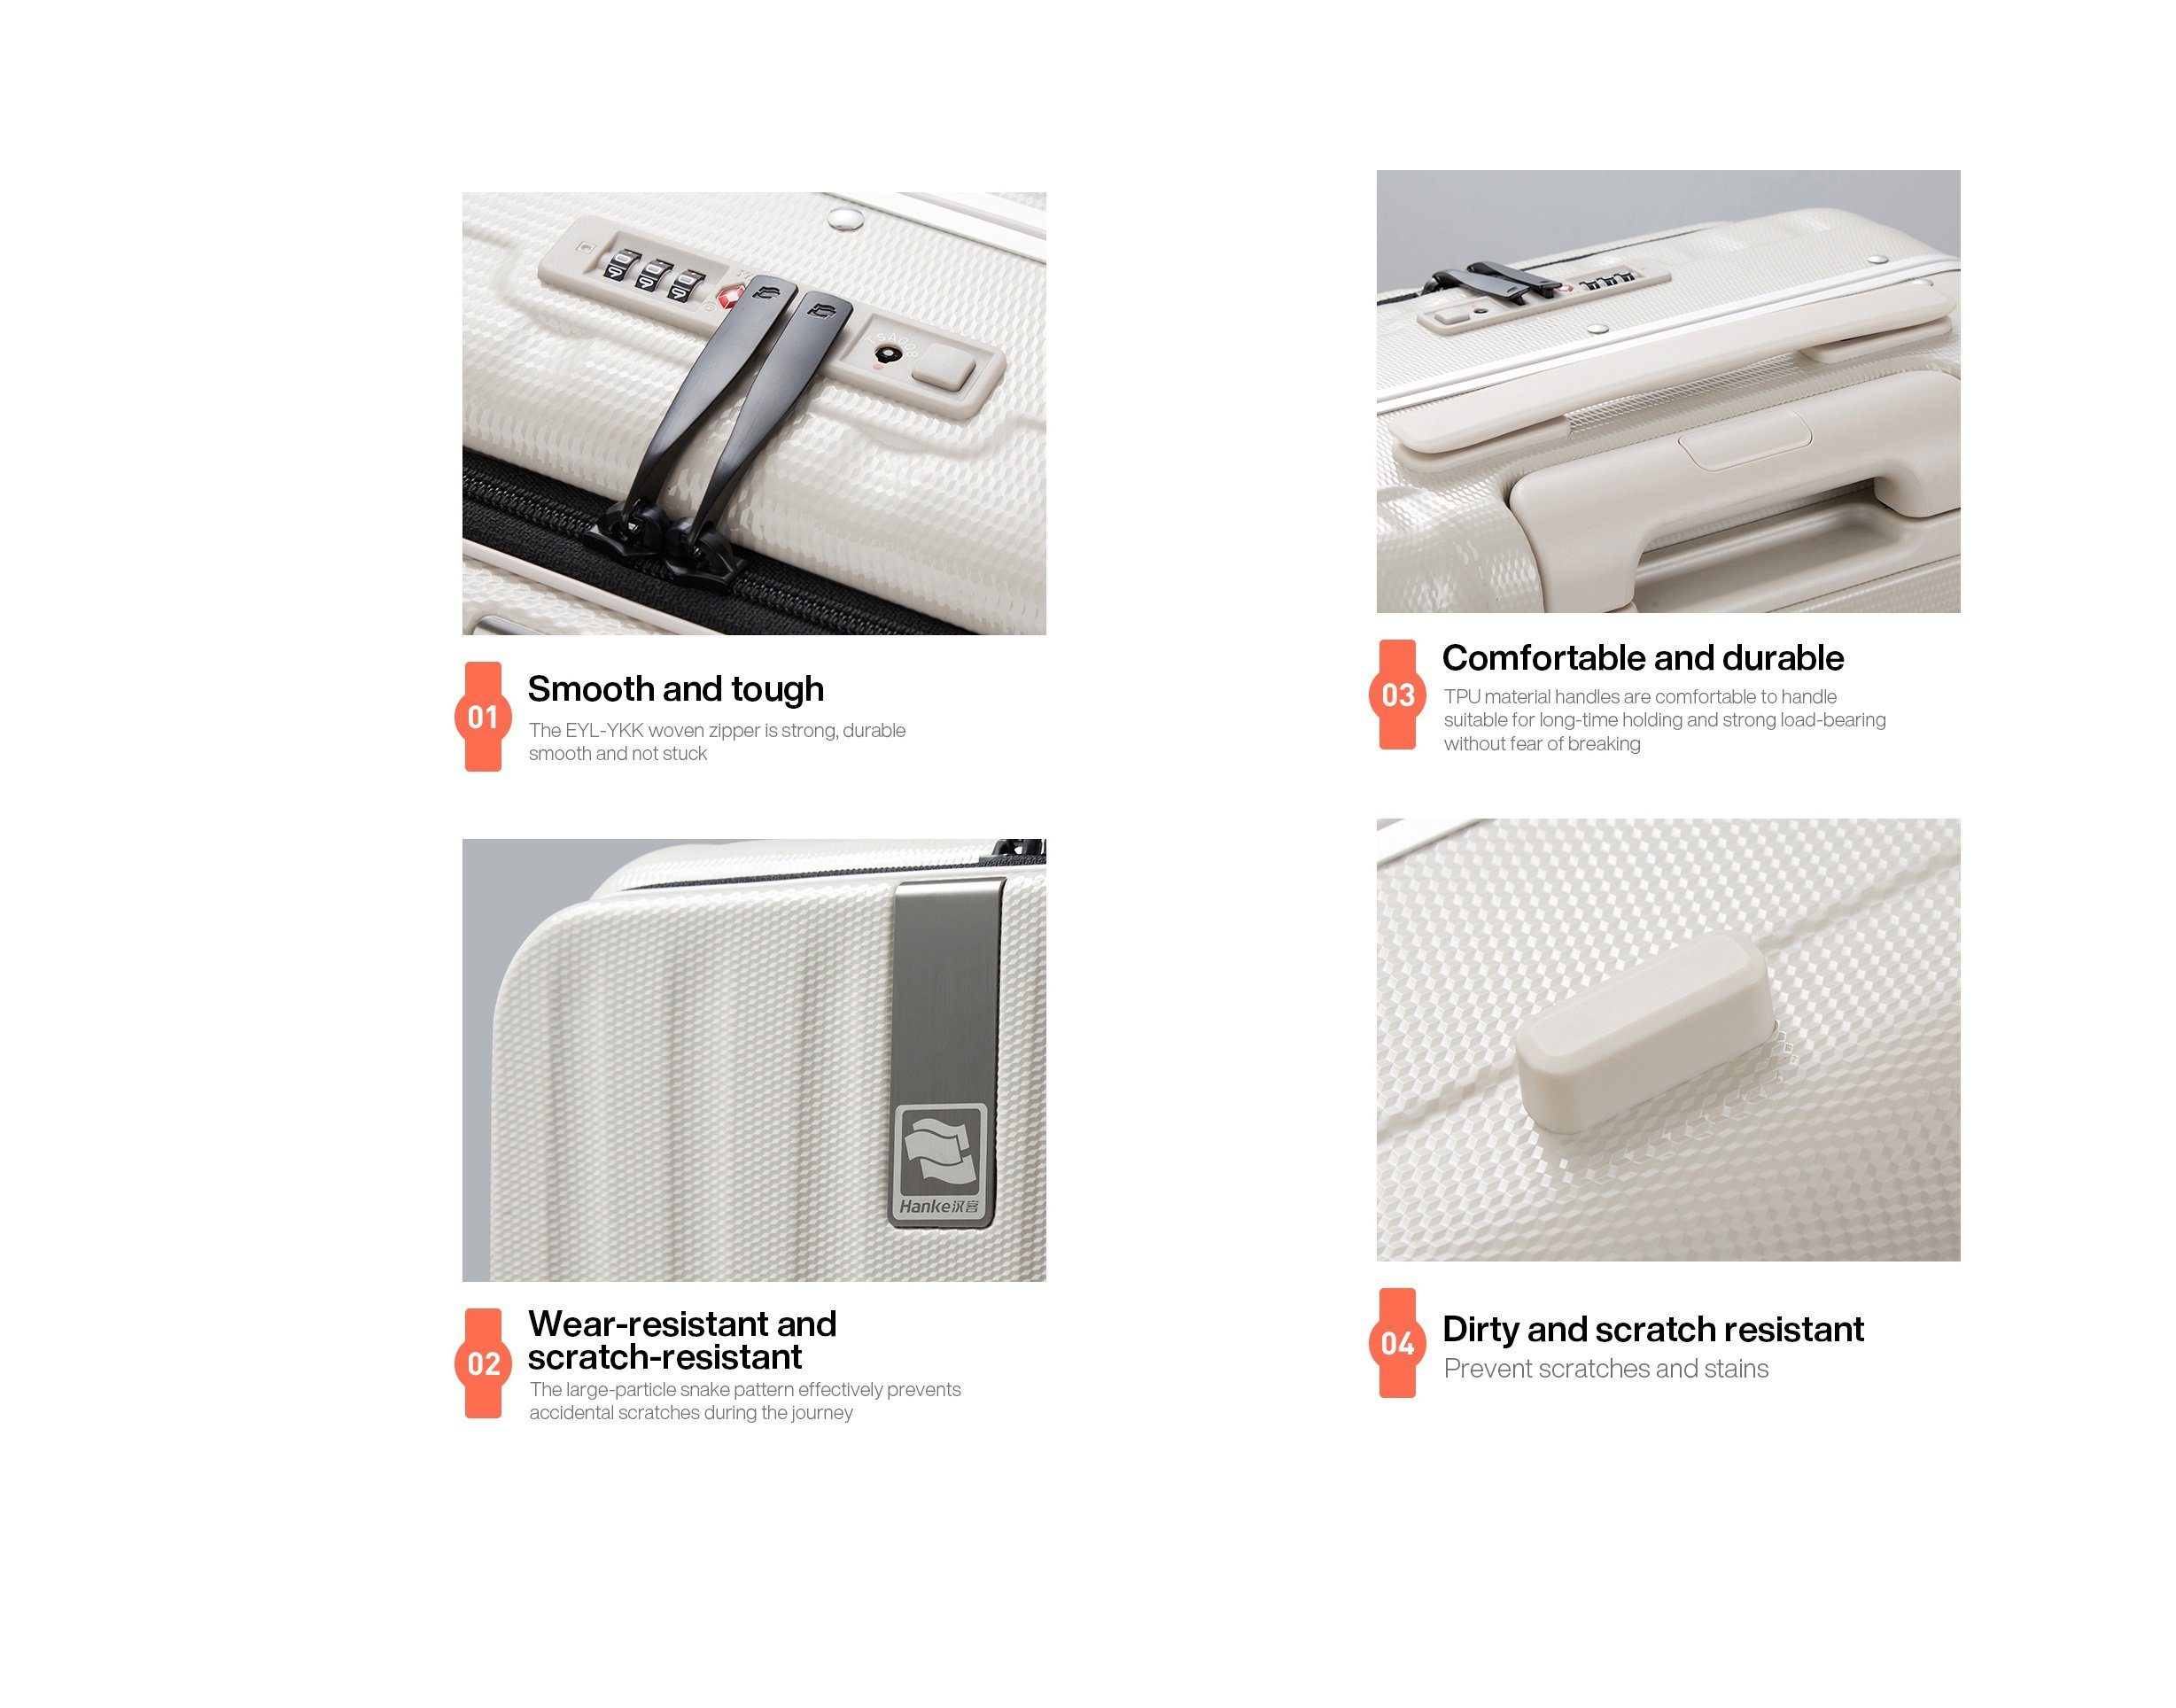 Premium mit Handgepäckkoffer Seitenklappe, schwarz Polycarbonat, TSA Hanke Hartschalen-Trolley